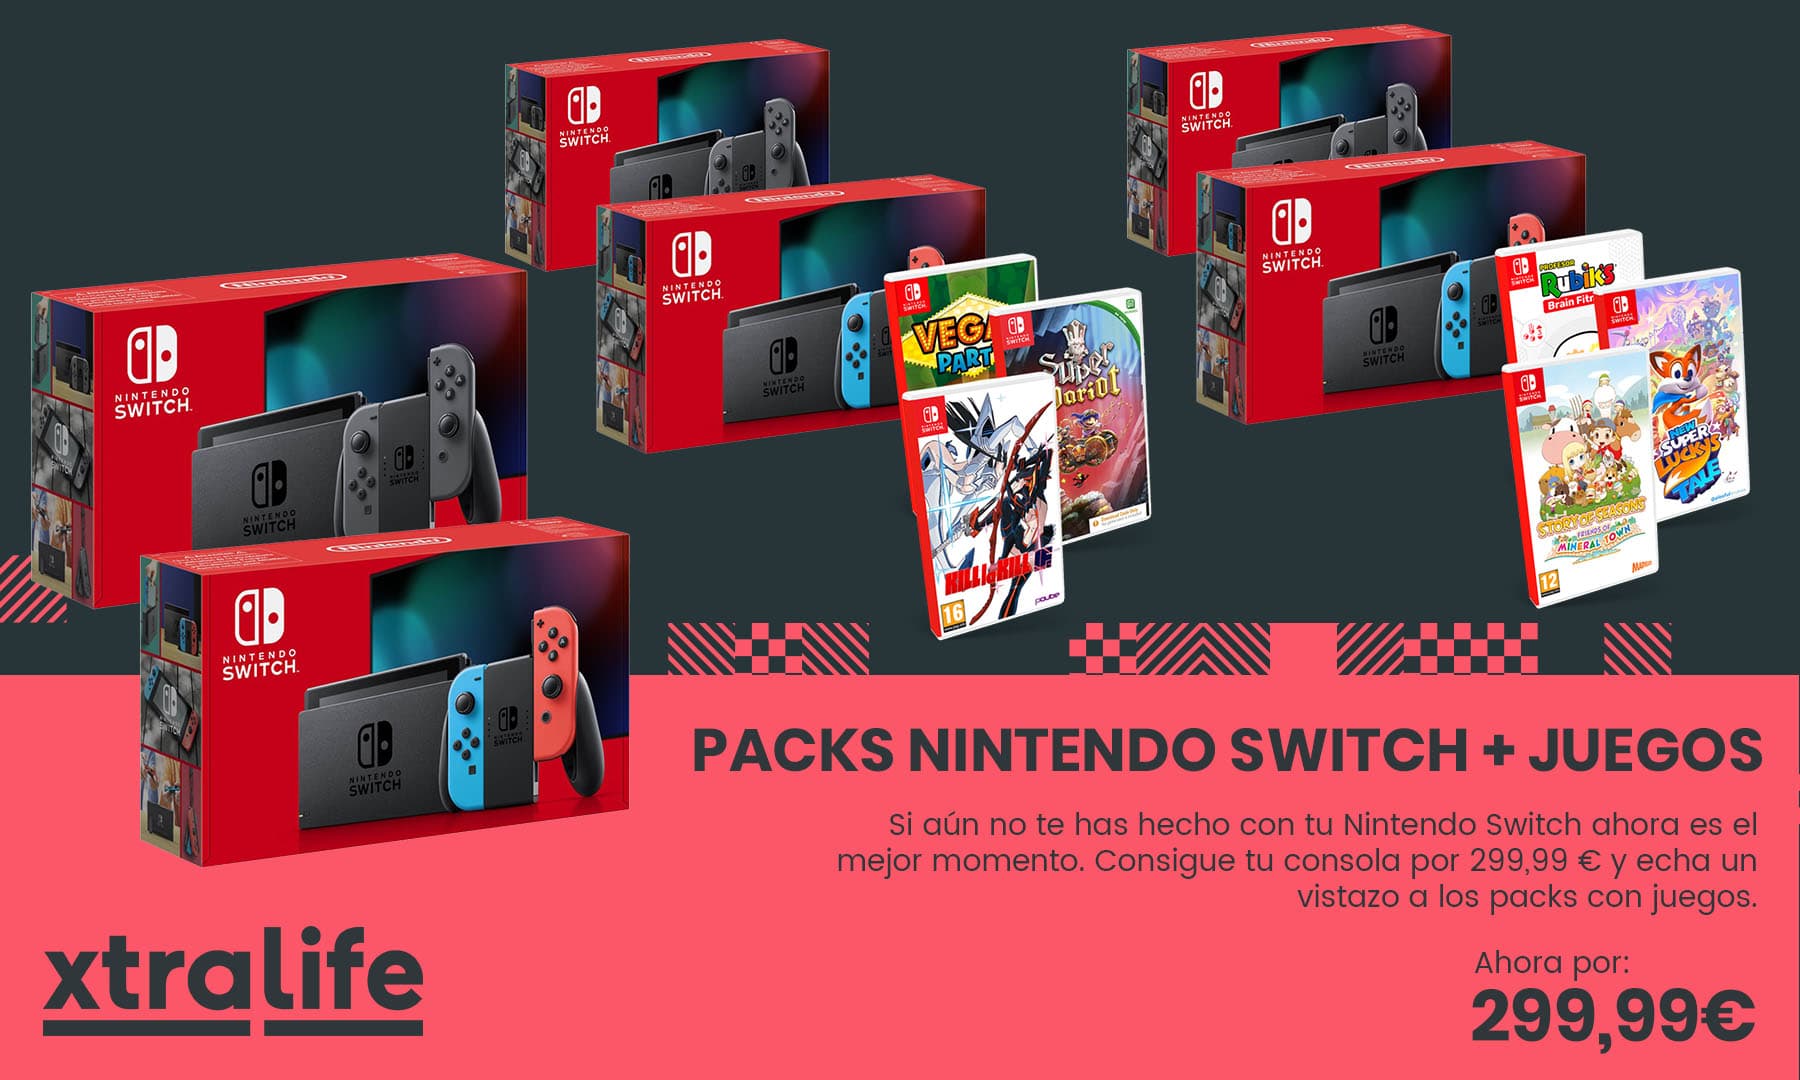 Consigue tu Nintendo Switch por solo 299,99 € con packs de juegos